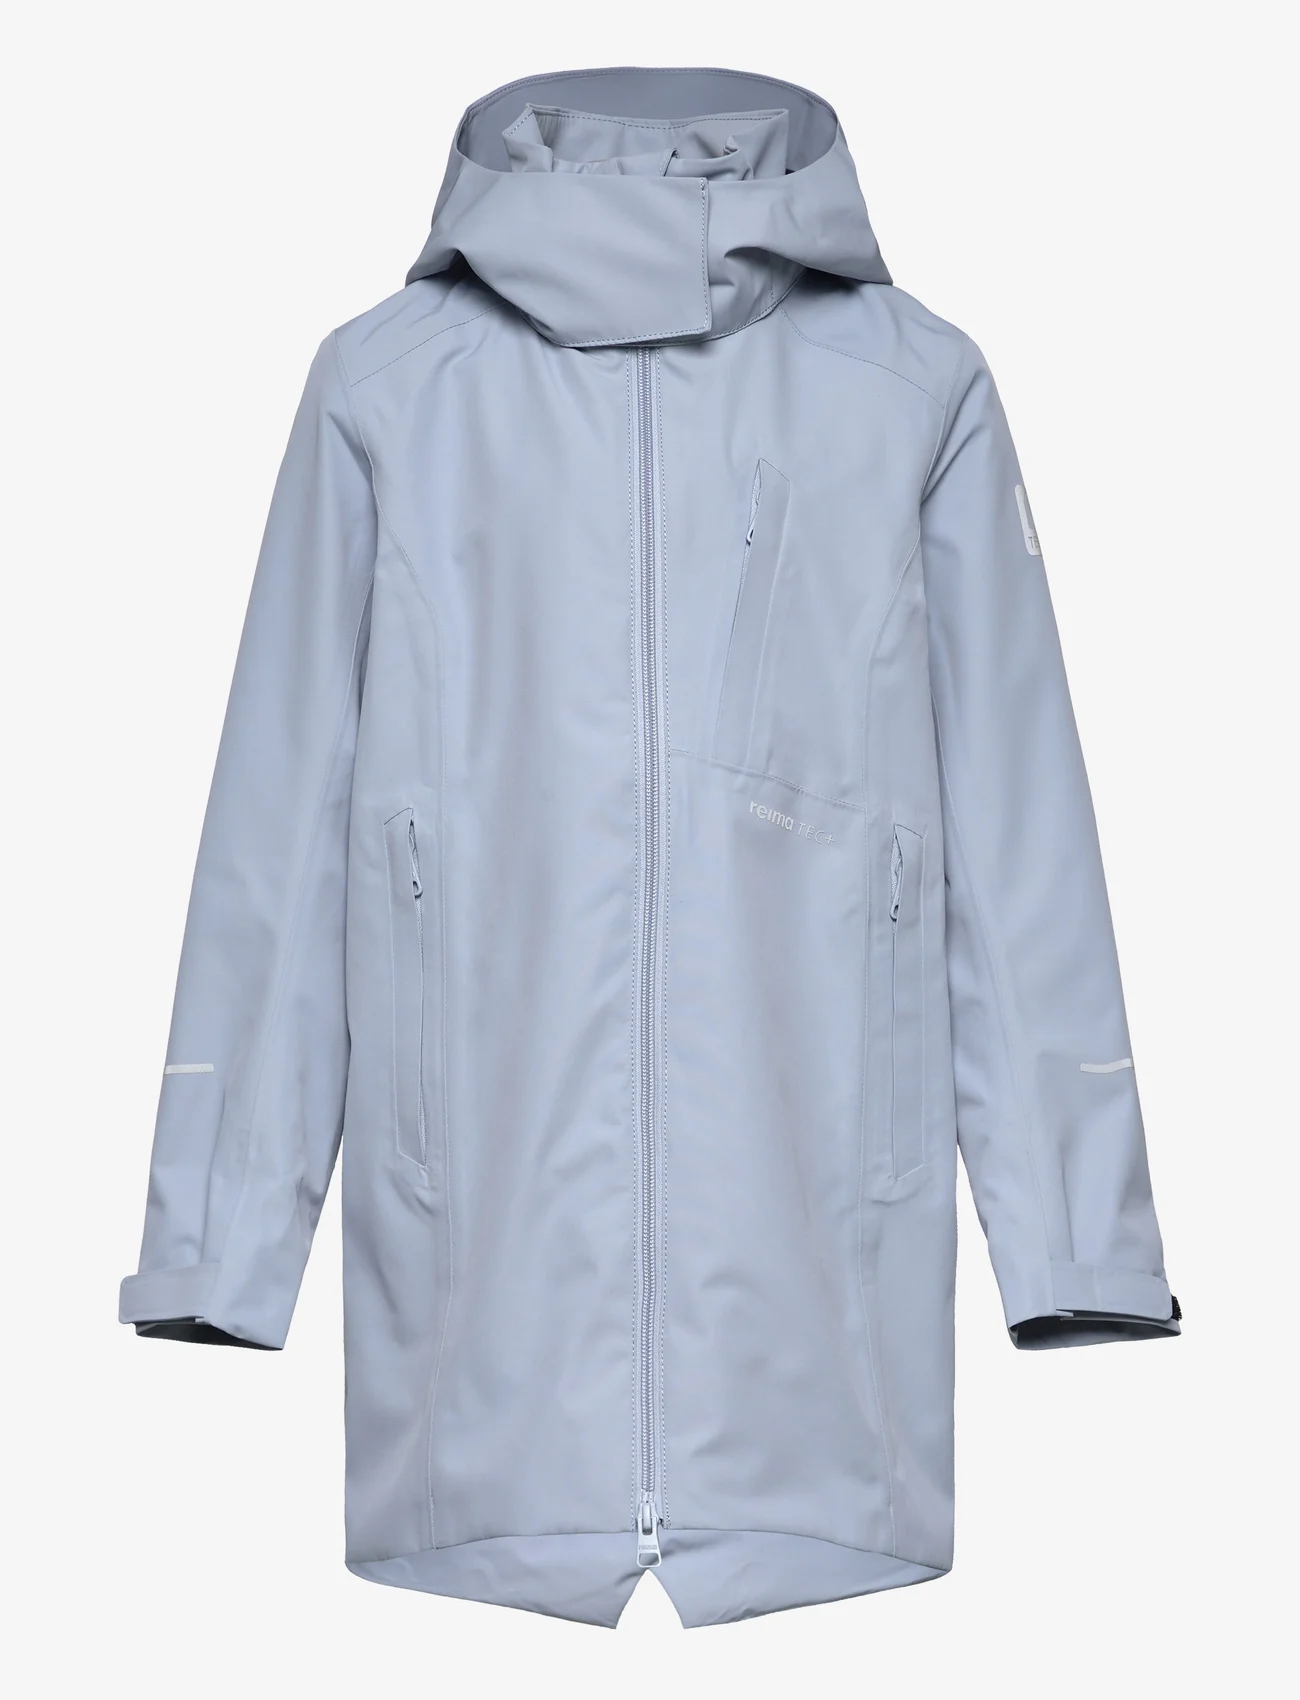 Reima - Reimatec jacket, Muutun - virsjakas - foggy blue - 0